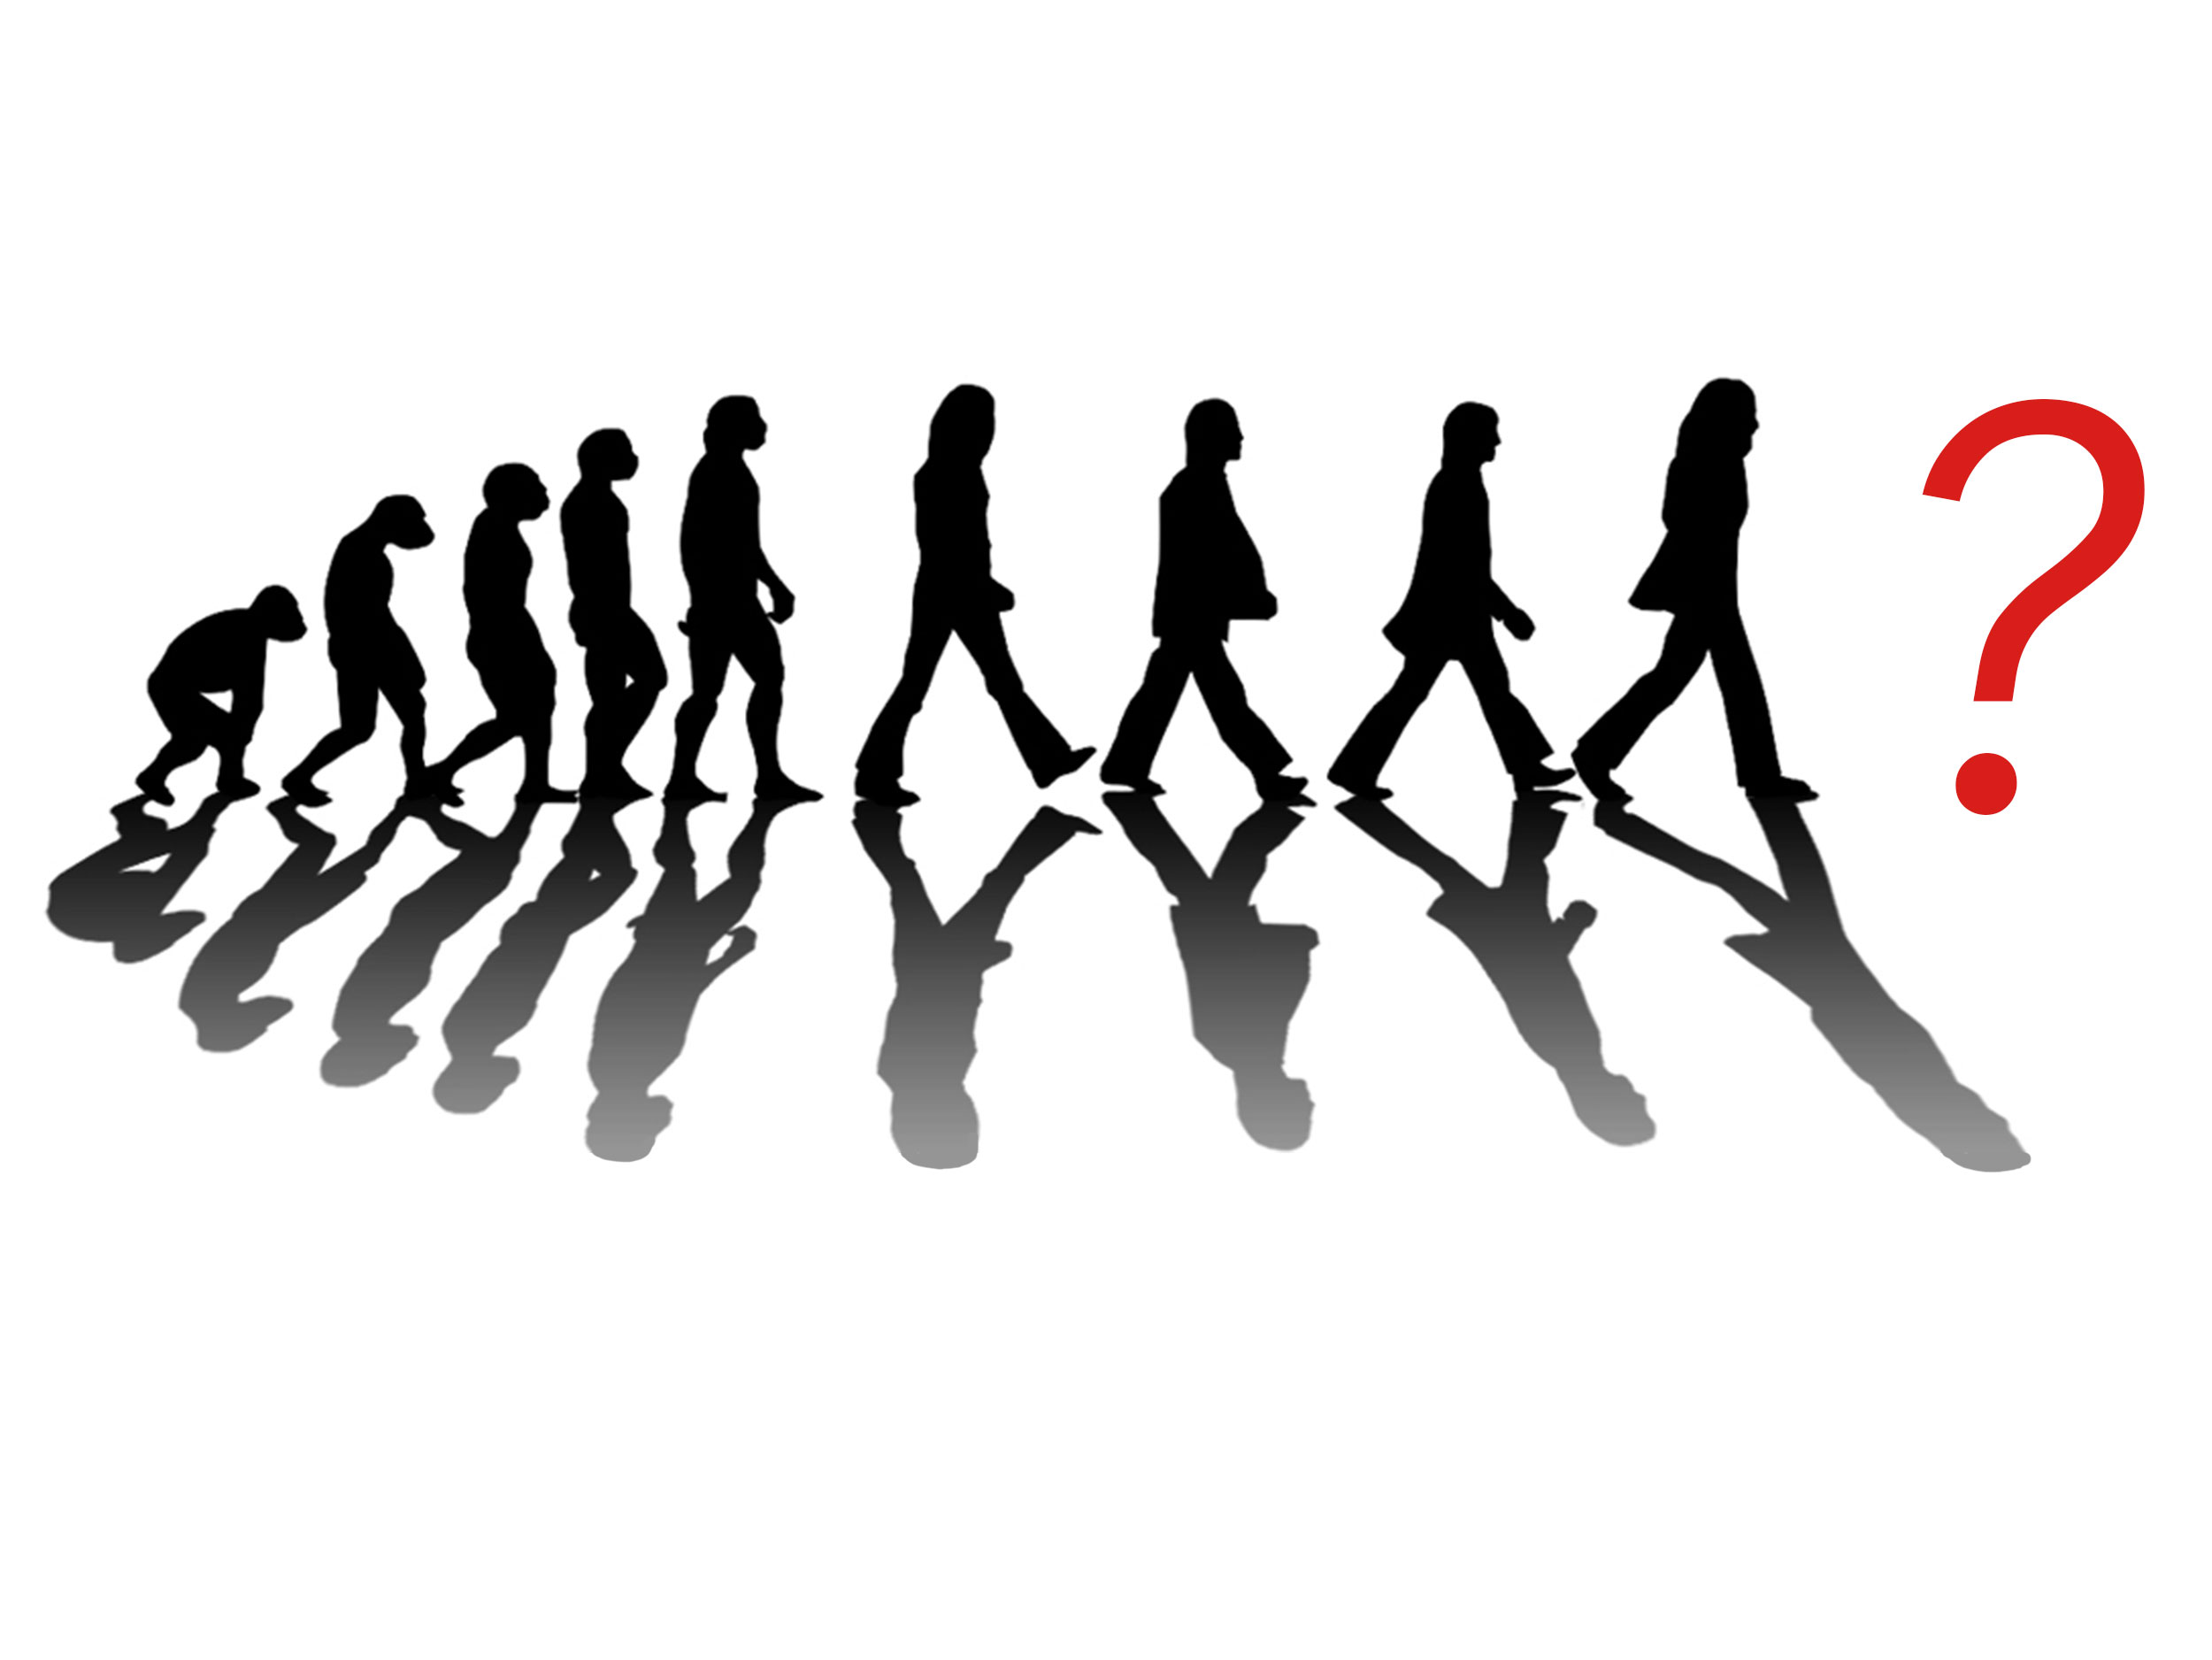 Человеческое общество быстро развивается и меняется. Эволюция Битлз. Эволюция общества. Человечество развивается. Эволюция человеческого сообщества.